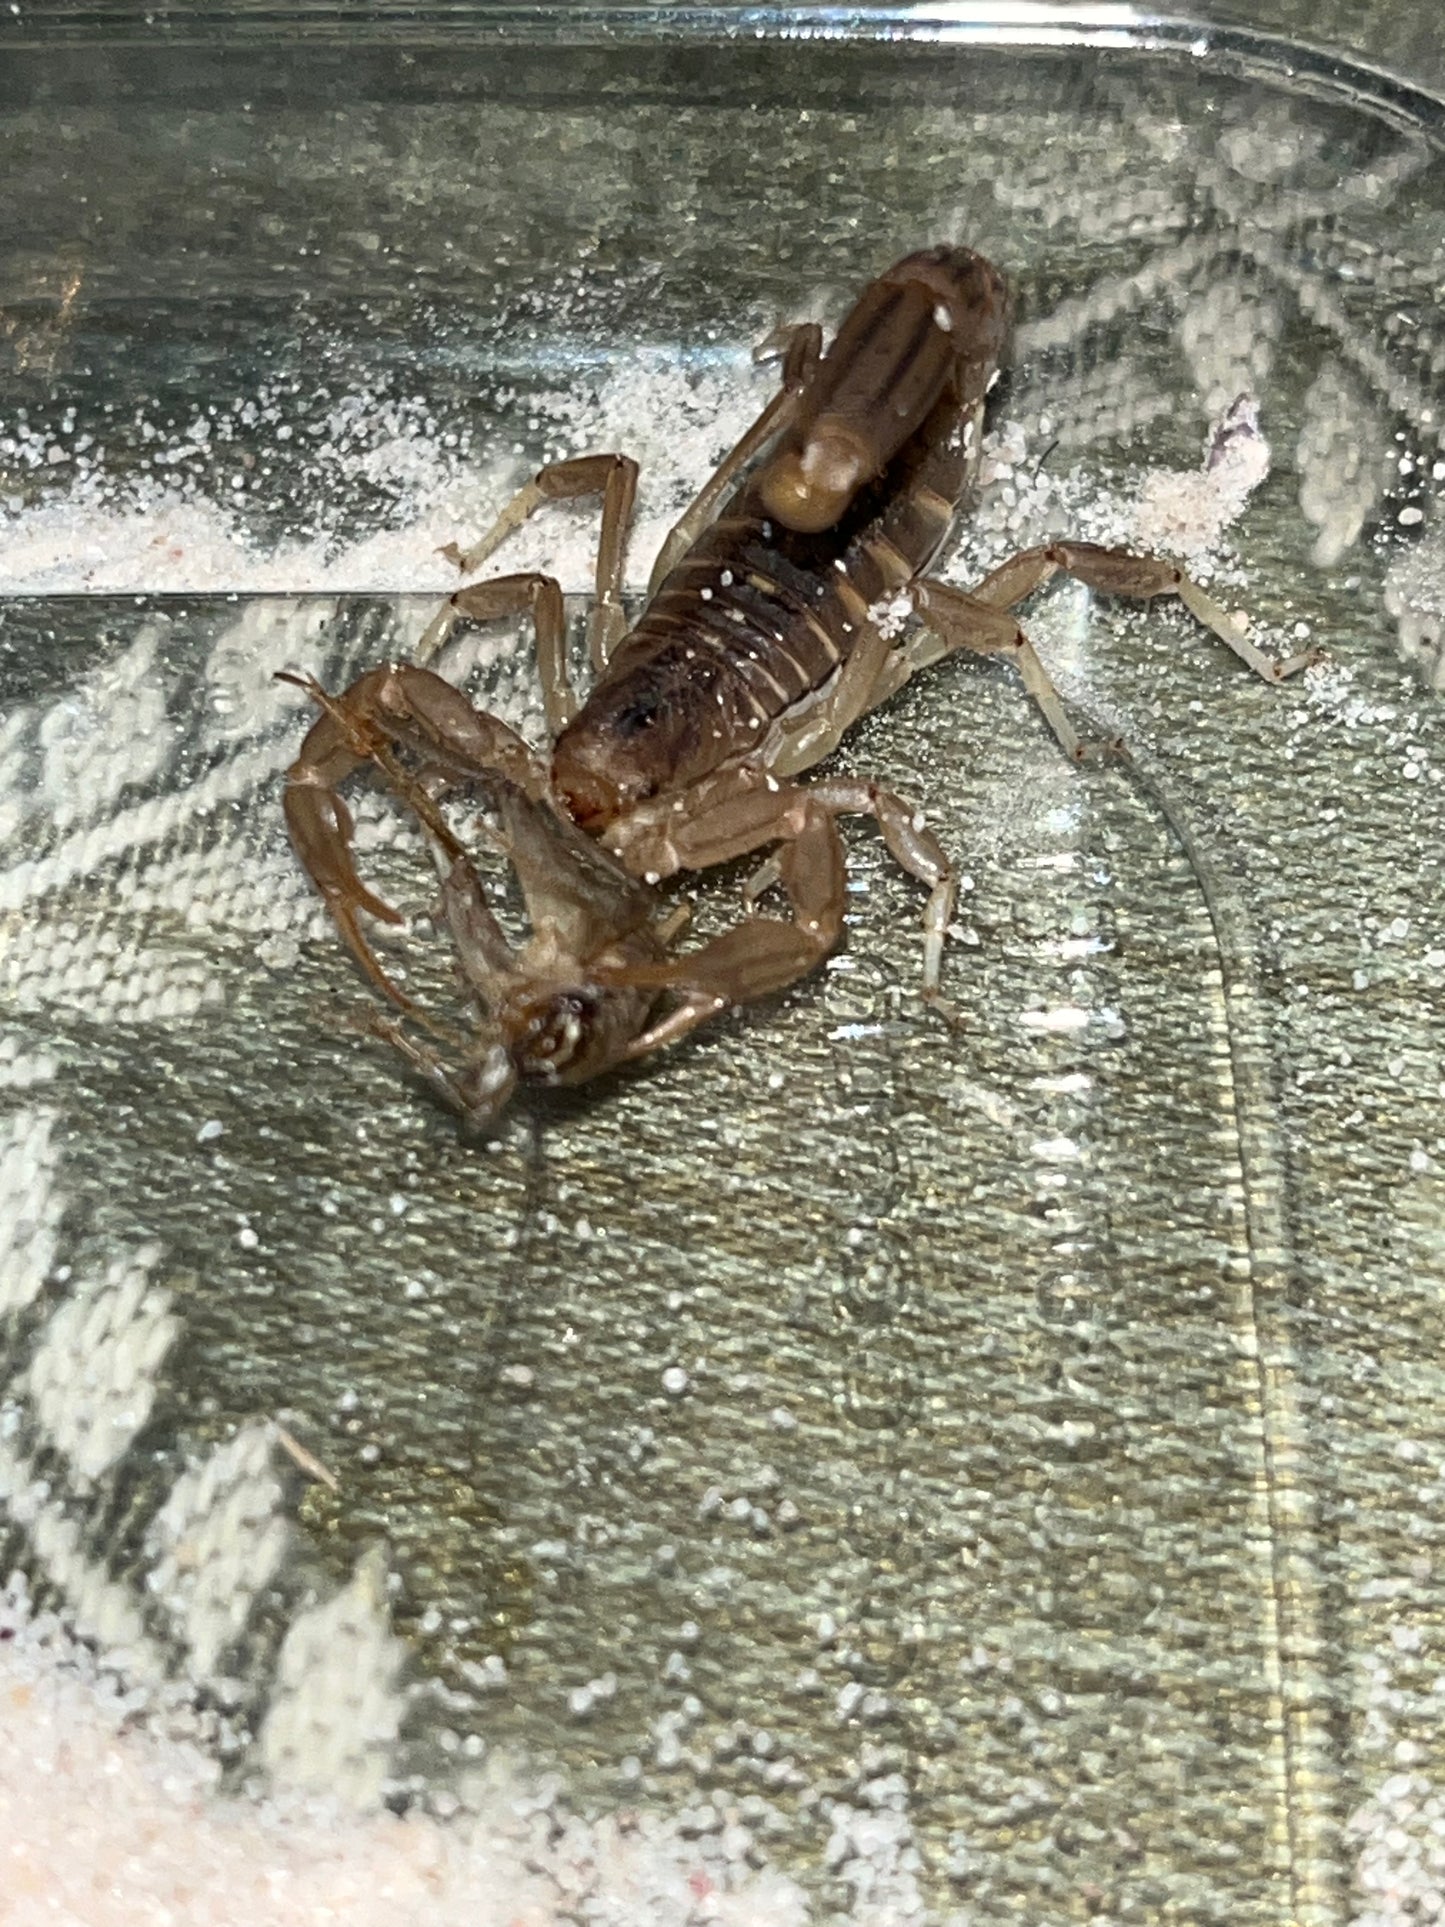 Paravaejovis Spinigerus (Stripe-Tailed Scorpion)